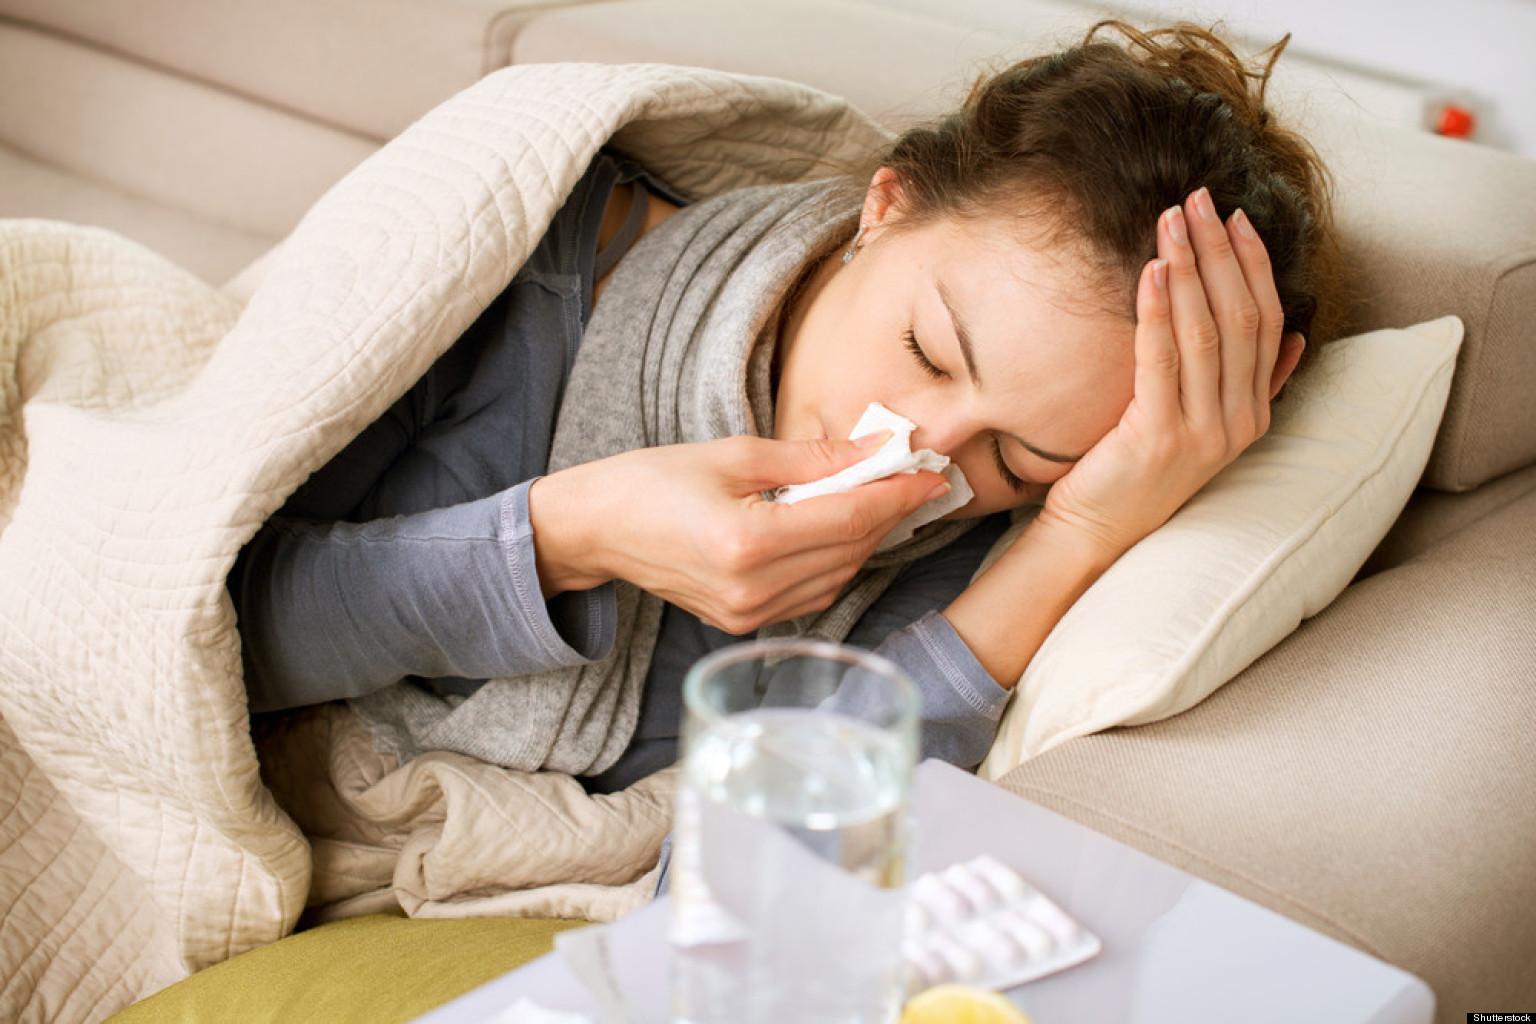 Γρίπη: Χρειαζόμαστε αντιπυρετικά και αντιικά- Όχι αντιβιοτικά στις ιώσεις!